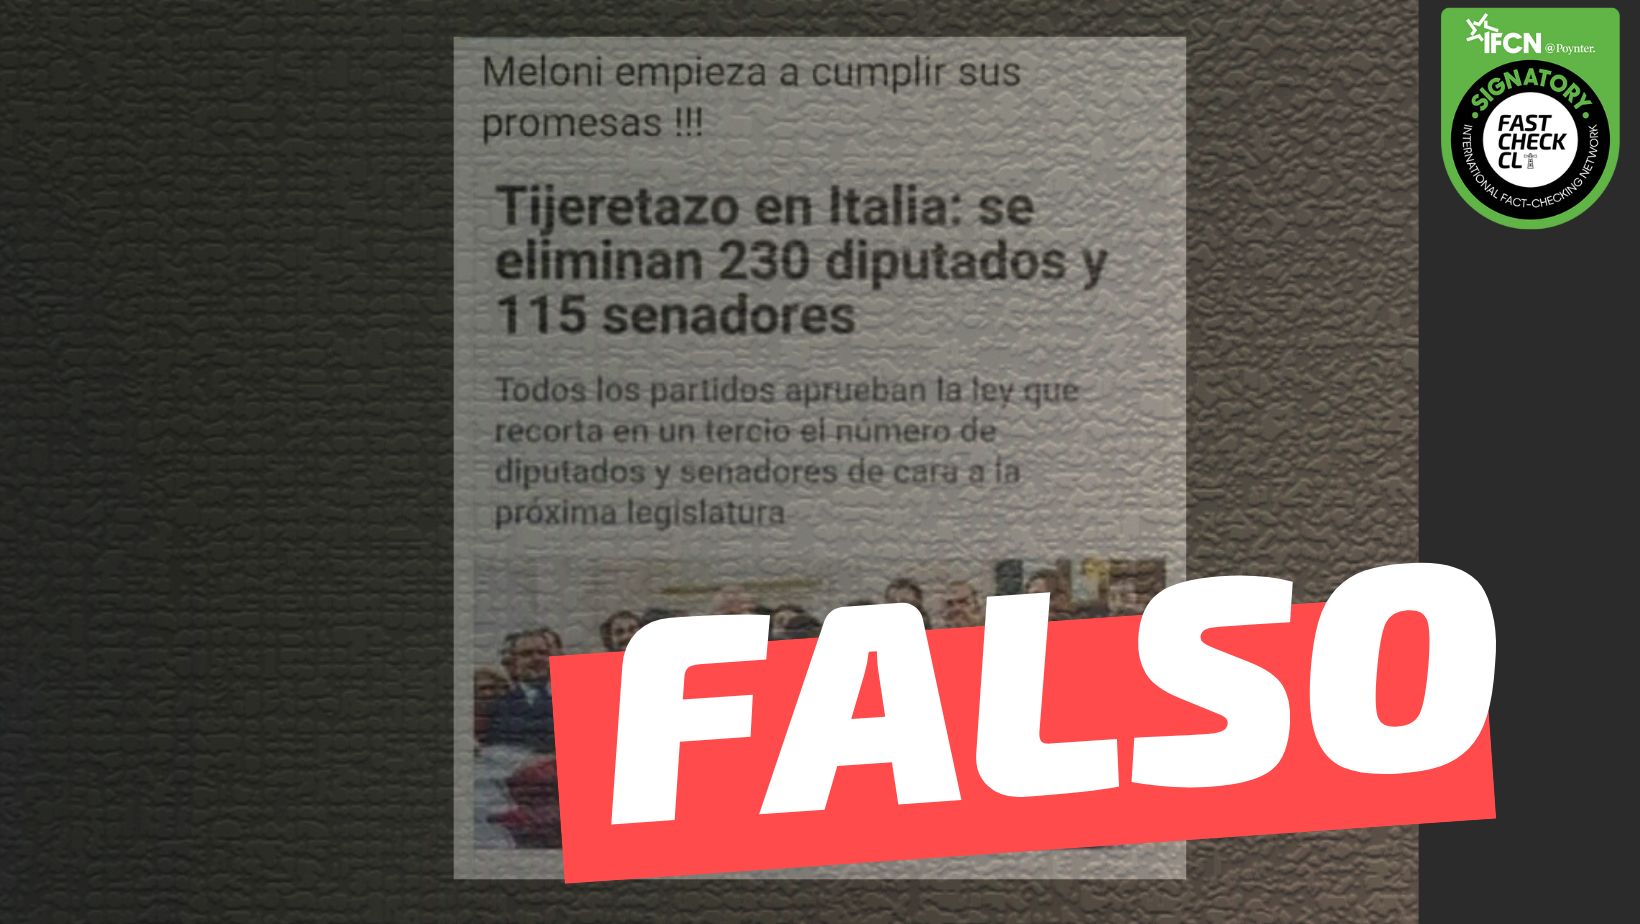 You are currently viewing “Meloni comienza a cumplir sus promesas. Se eliminan 230 diputados y 115 senadores”: #Falso